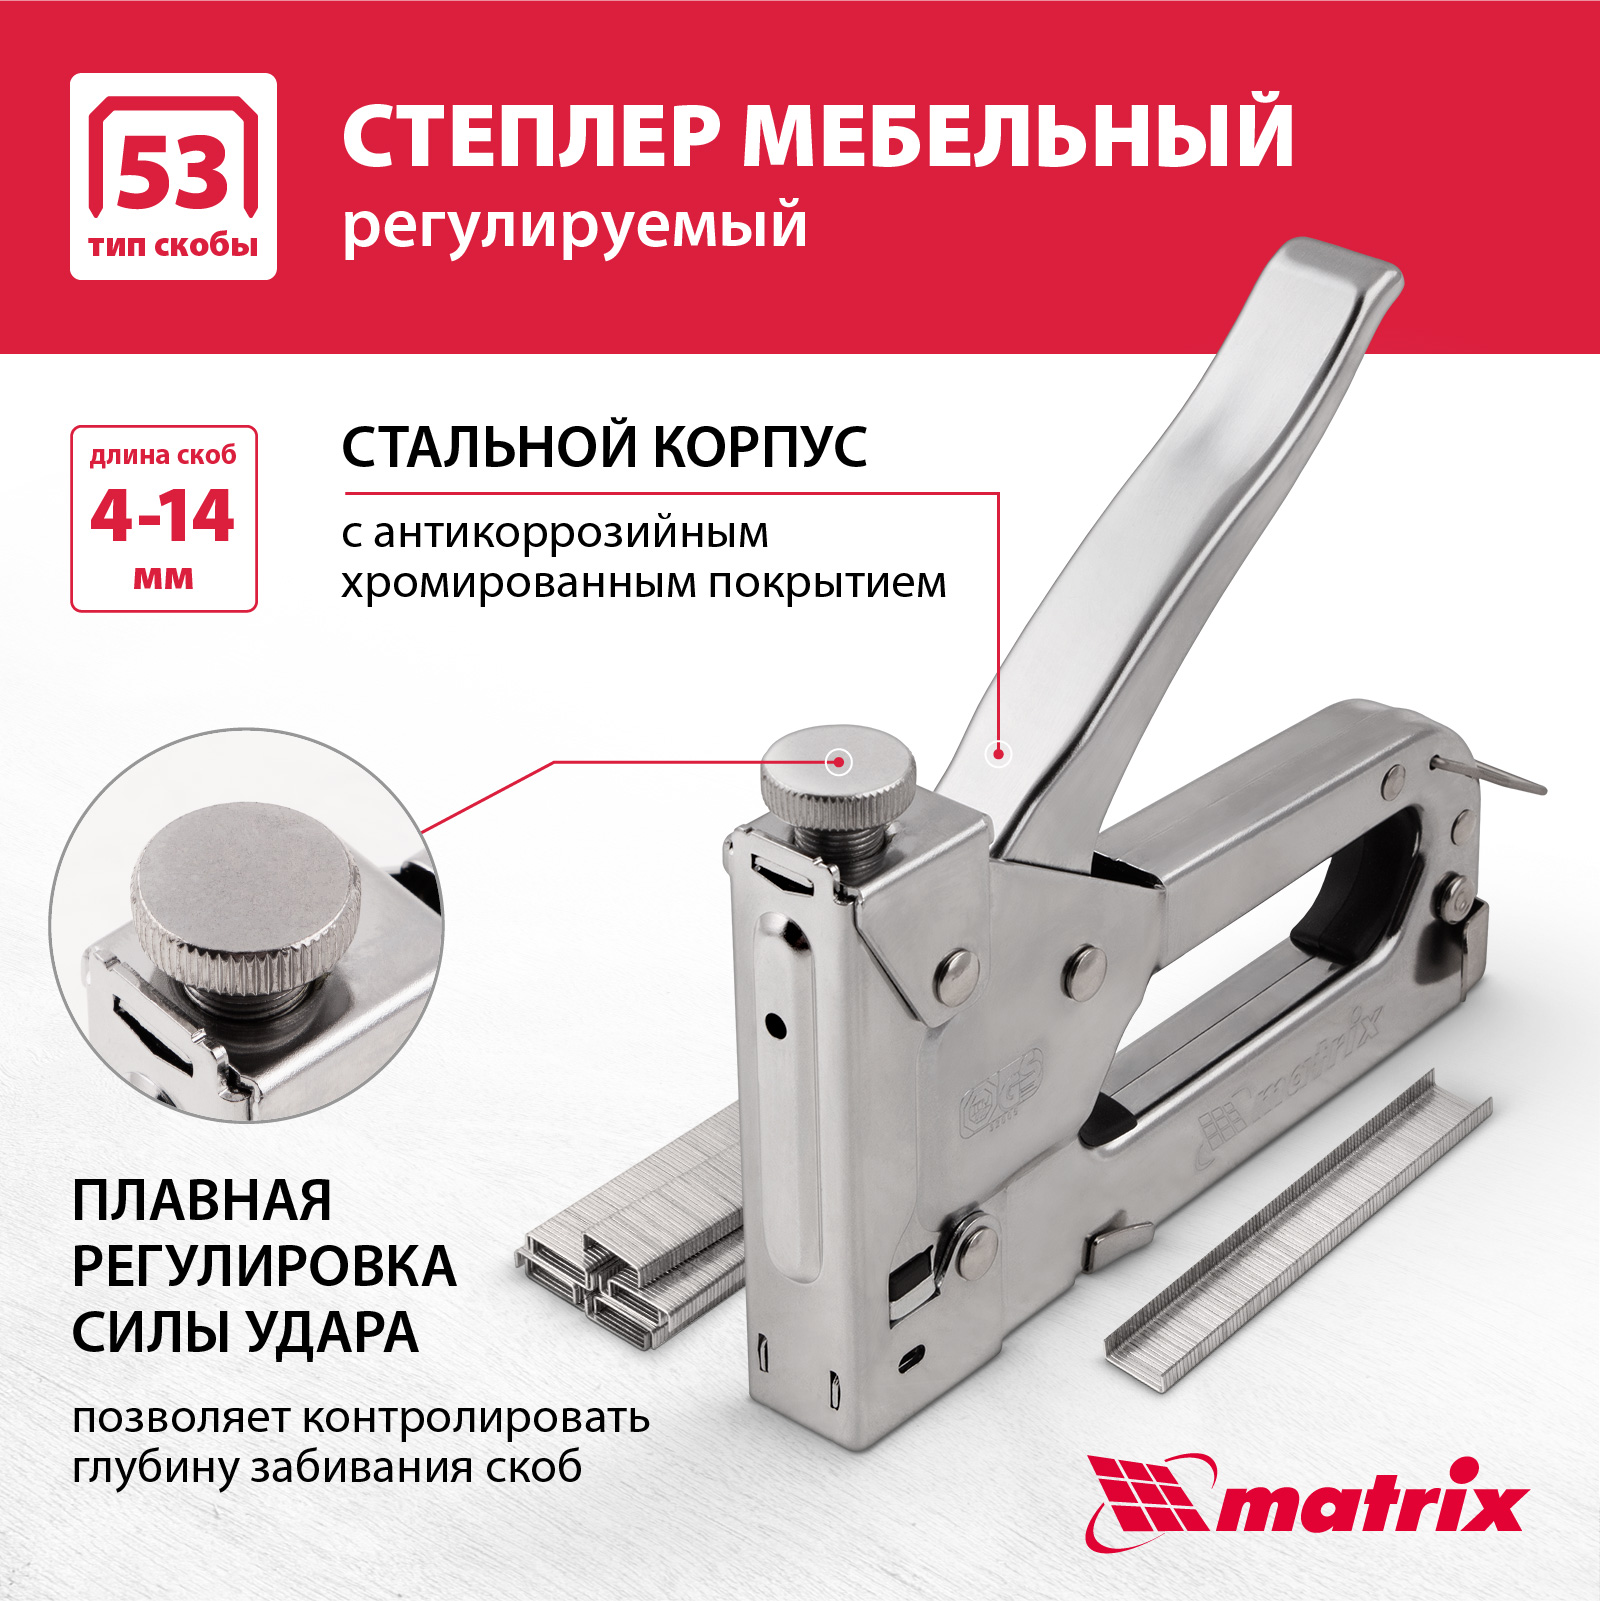 Степлер мебельный регулируемый MATRIX 40902 тип скобы 53, 4-14 мм степлер мебельный вихрь 73 9 3 1 53 тип 4 14 мм